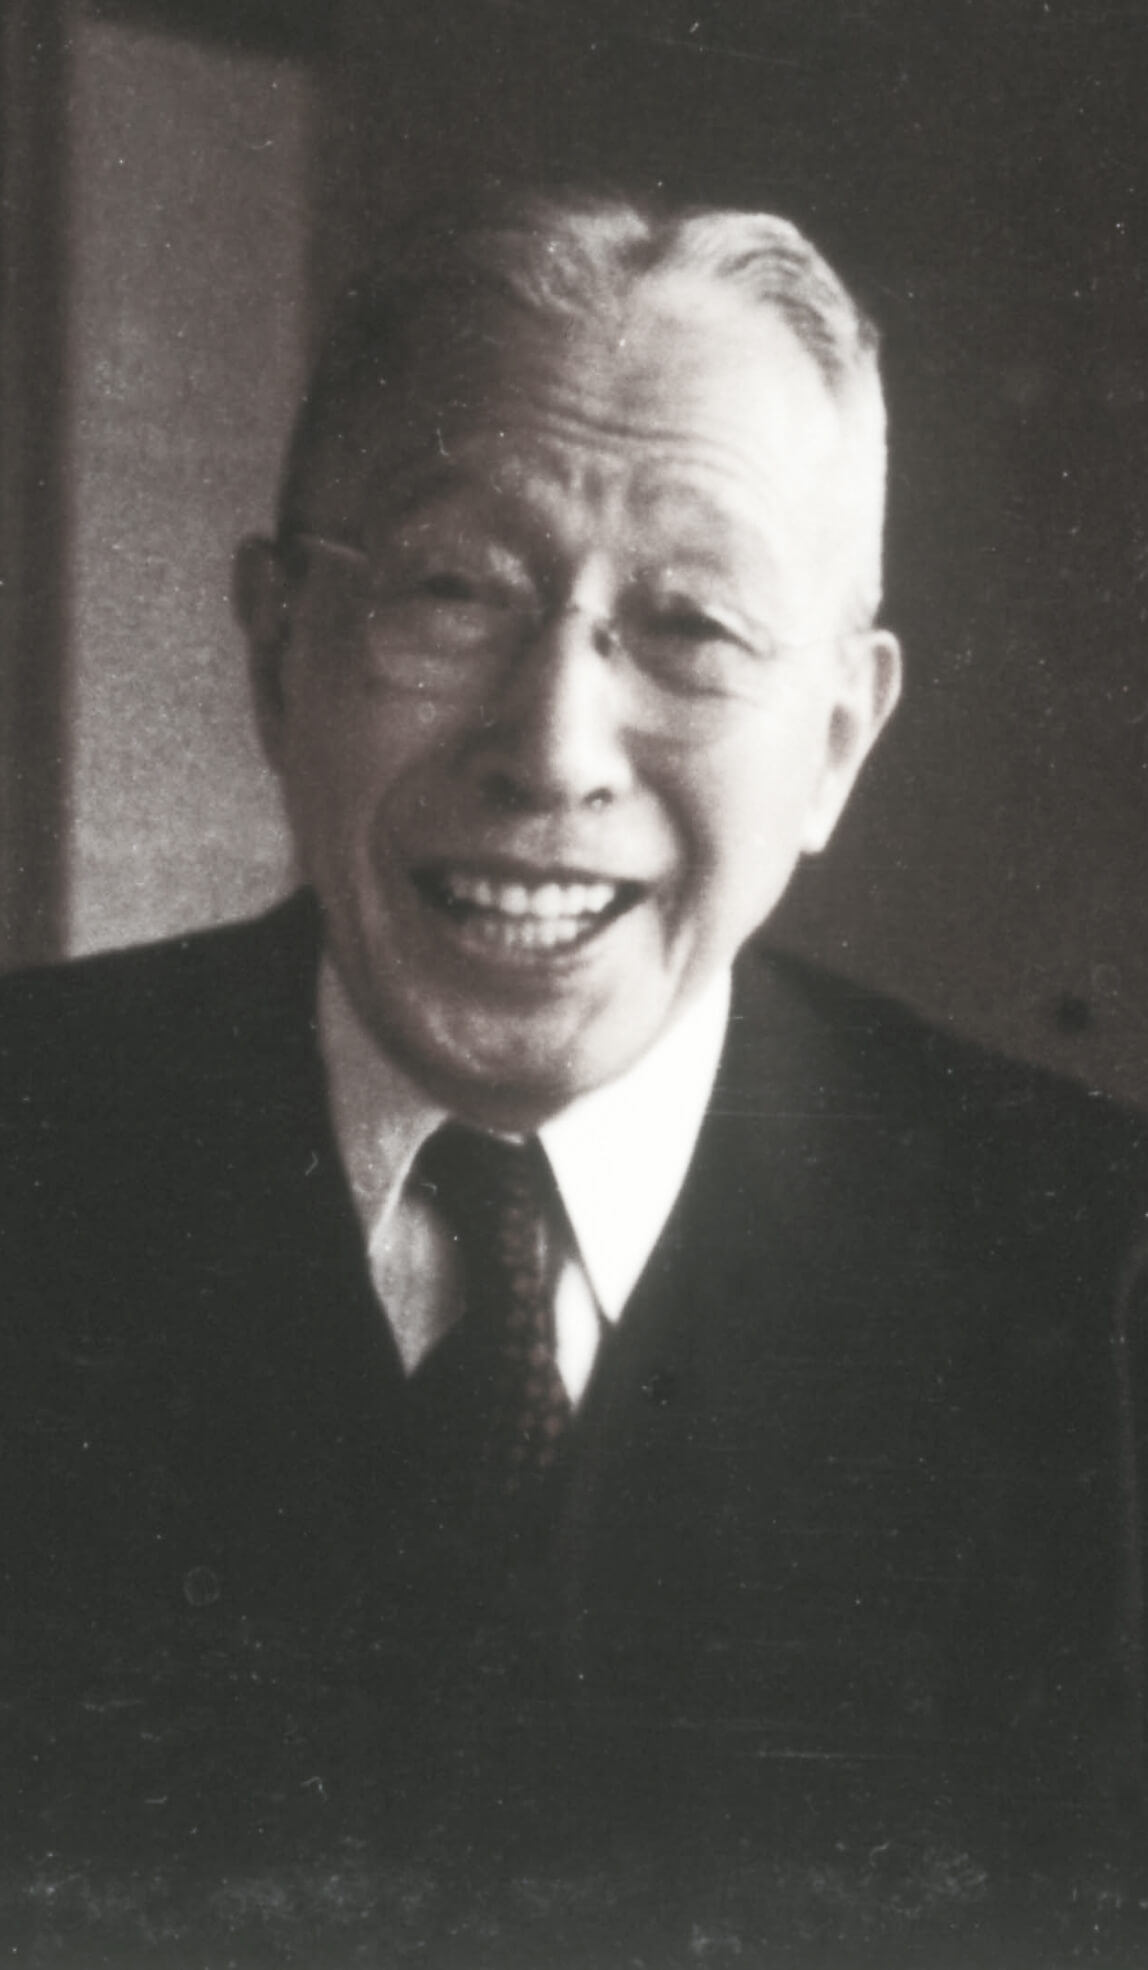 Black-and-white photo of Suntory founder Shinjiro Torii